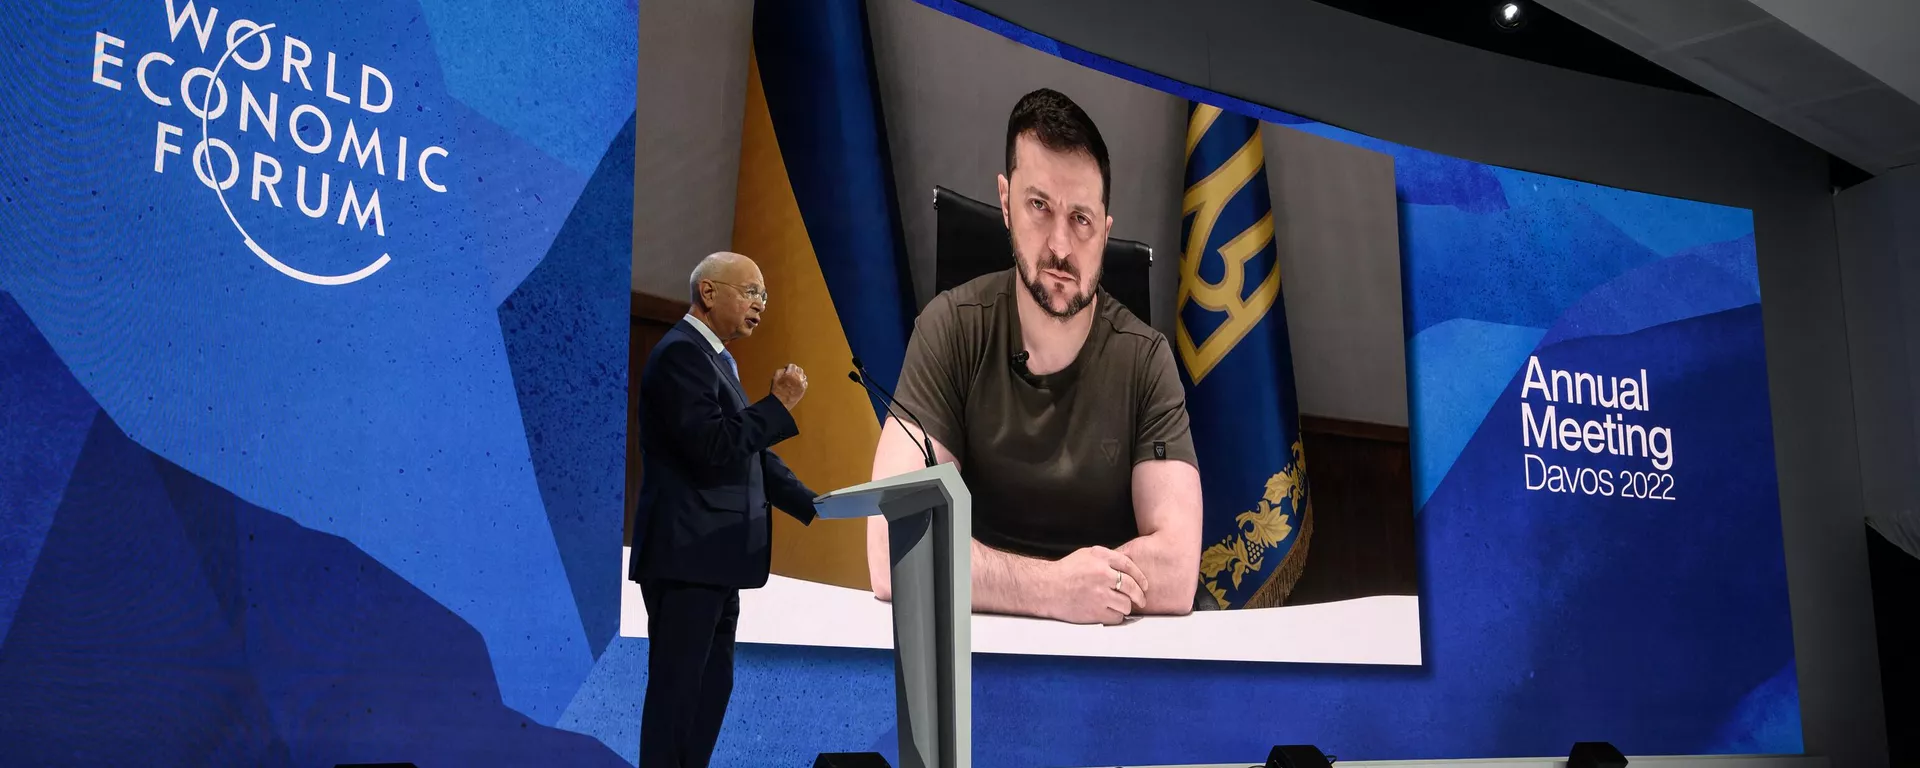 Ο ιδρυτής και εκτελεστικός πρόεδρος του Παγκόσμιου Οικονομικού Φόρουμ Klaus Schwab καλωσορίζει τον Ουκρανό Πρόεδρο Volodymyr Zelensky που εμφανίζεται σε μια γιγαντιαία οθόνη μέσω σύνδεσης βίντεο στο συνεδριακό κέντρο κατά τη διάρκεια της ετήσιας συνεδρίασης του Παγκόσμιου Οικονομικού Φόρουμ (WEF) στο Νταβός στις 23 Μαΐου 2022. Ο Ζελένσκι αναμένεται επίσης να παρακολουθήσει τις συνεδριάσεις του WEF για το 2024 αυτή την εβδομάδα.  - Sputnik International, 1920, 15.01.2024